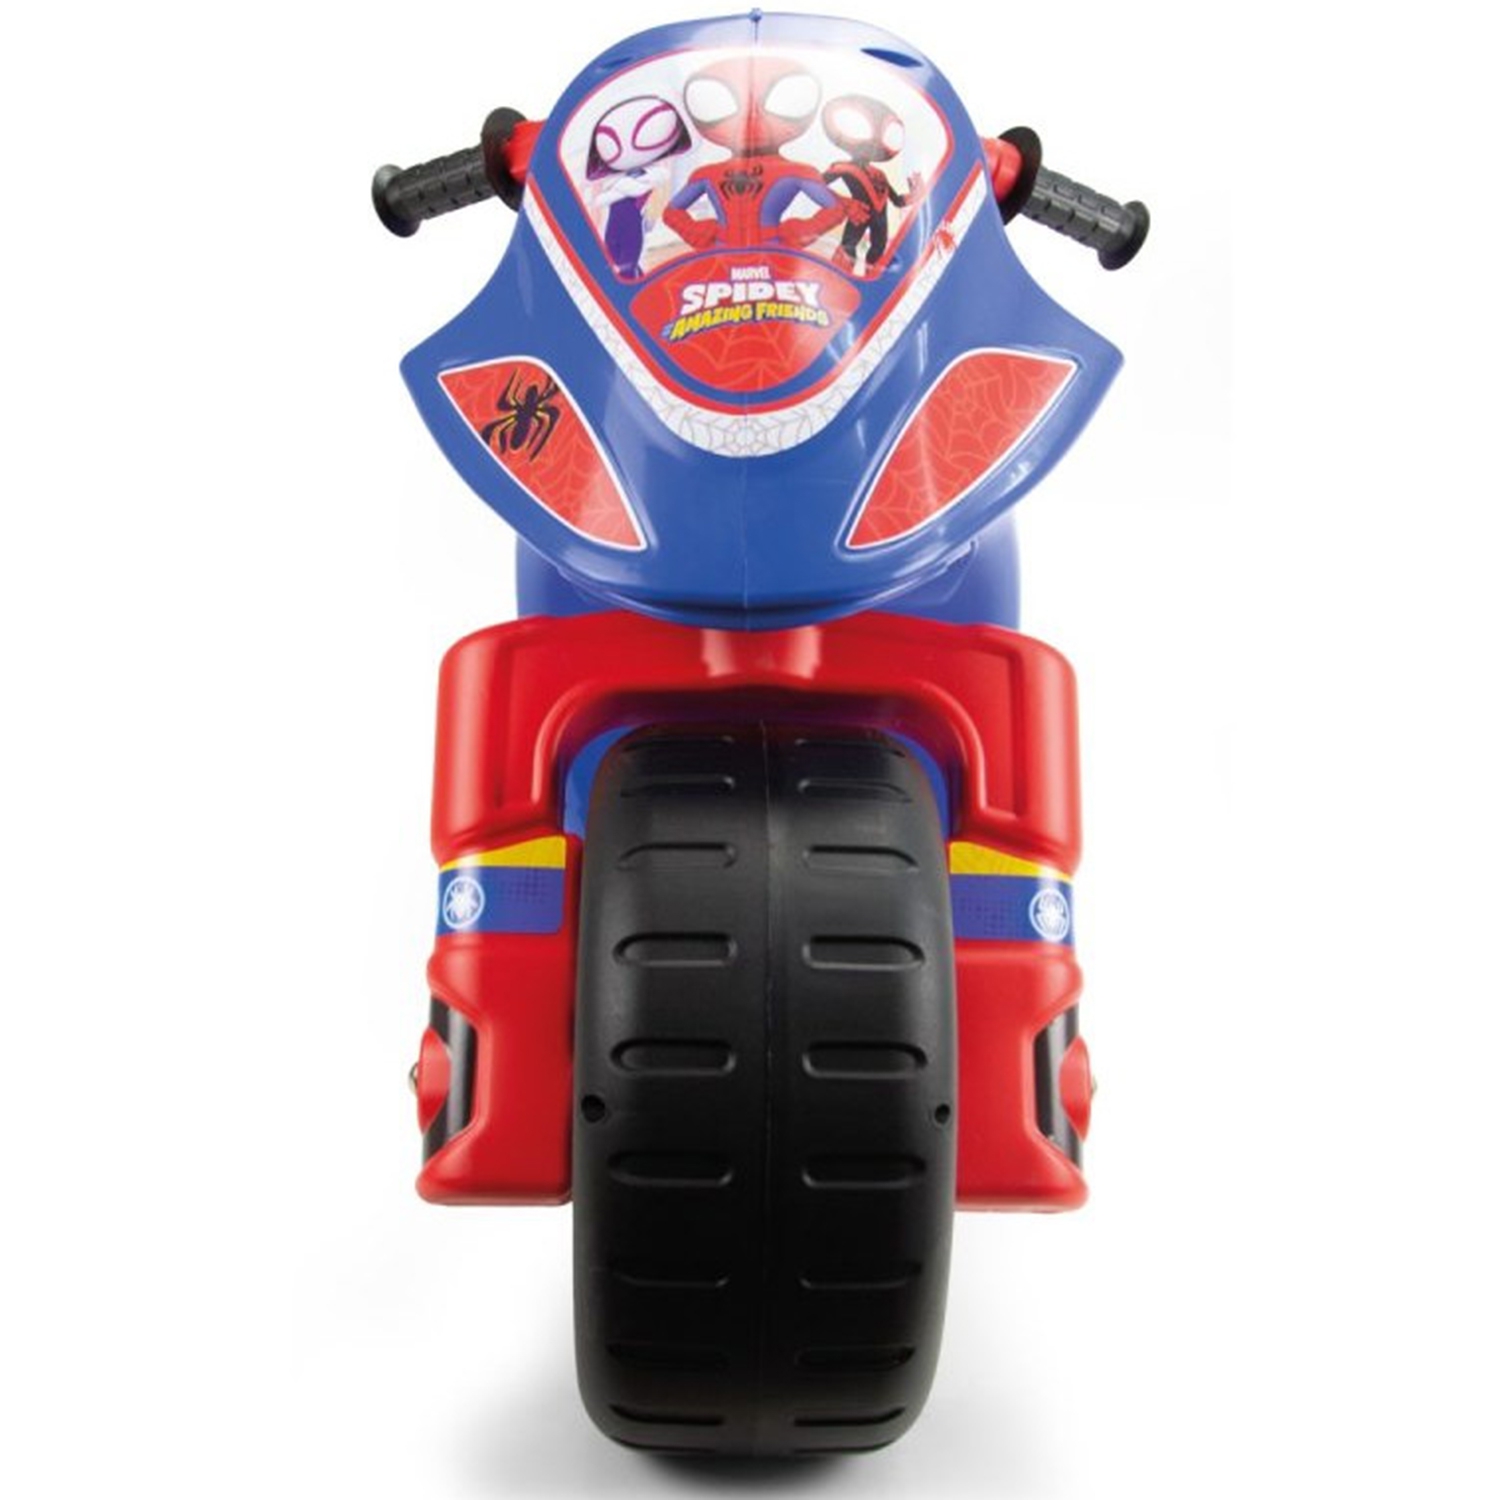 Spiderman motor biegowy jeździk (od 3 lat), zabawka dla dzieci, INJUSA